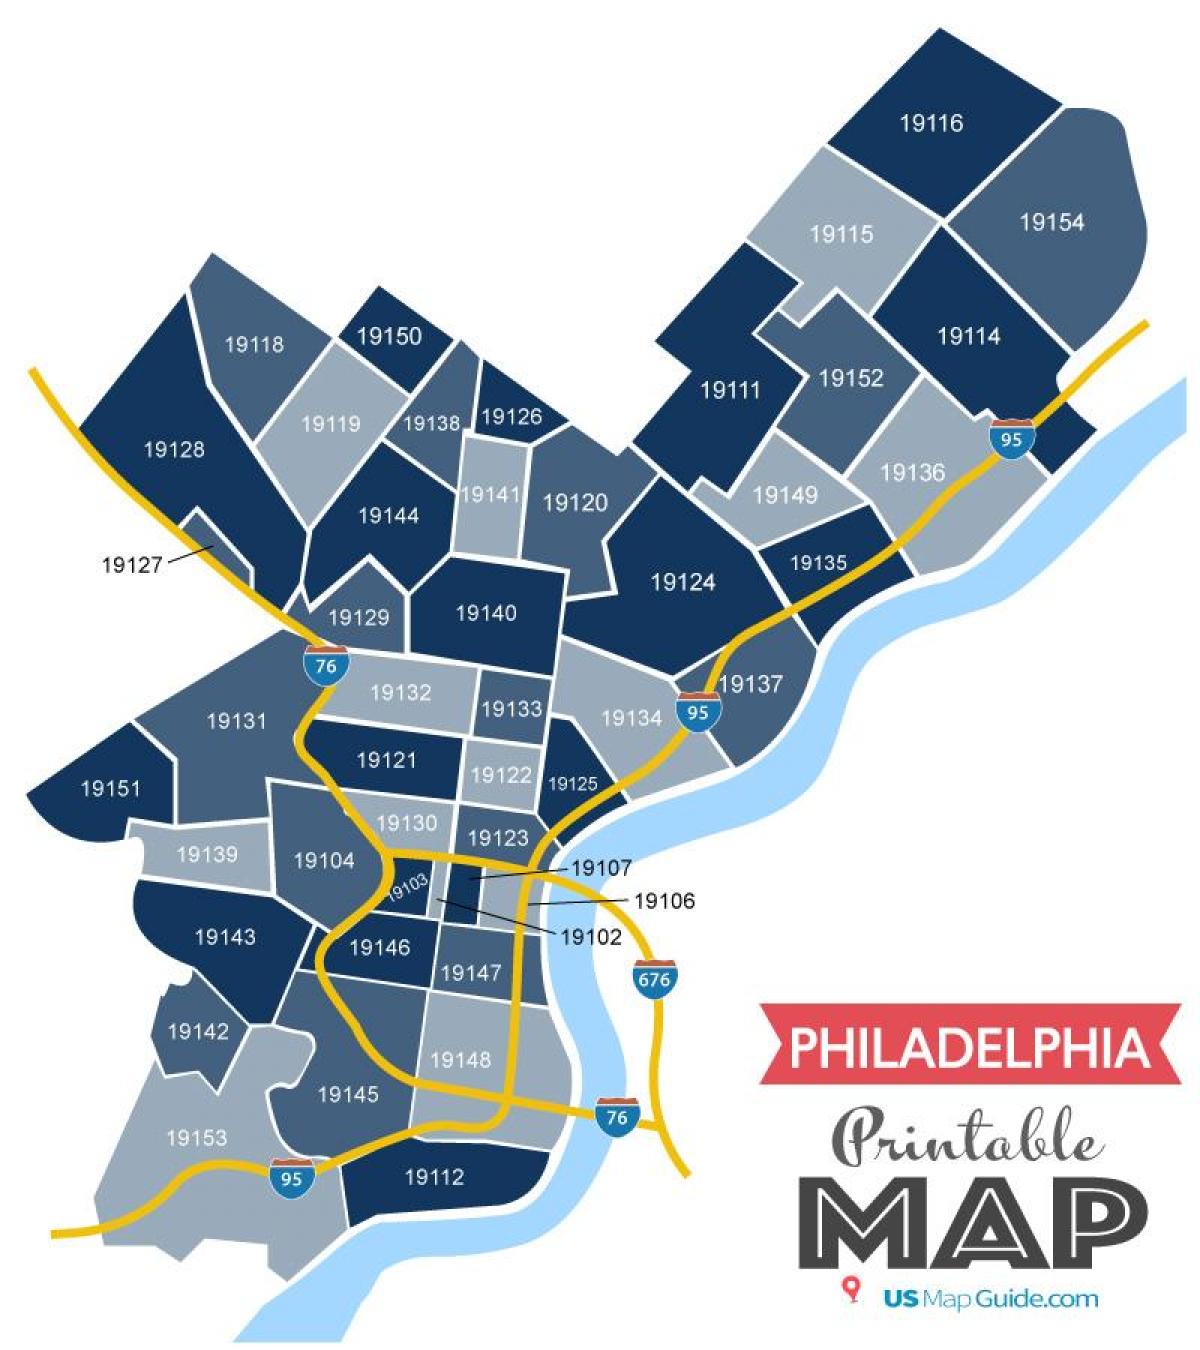 Mappa dei codici postali di Filadelfia